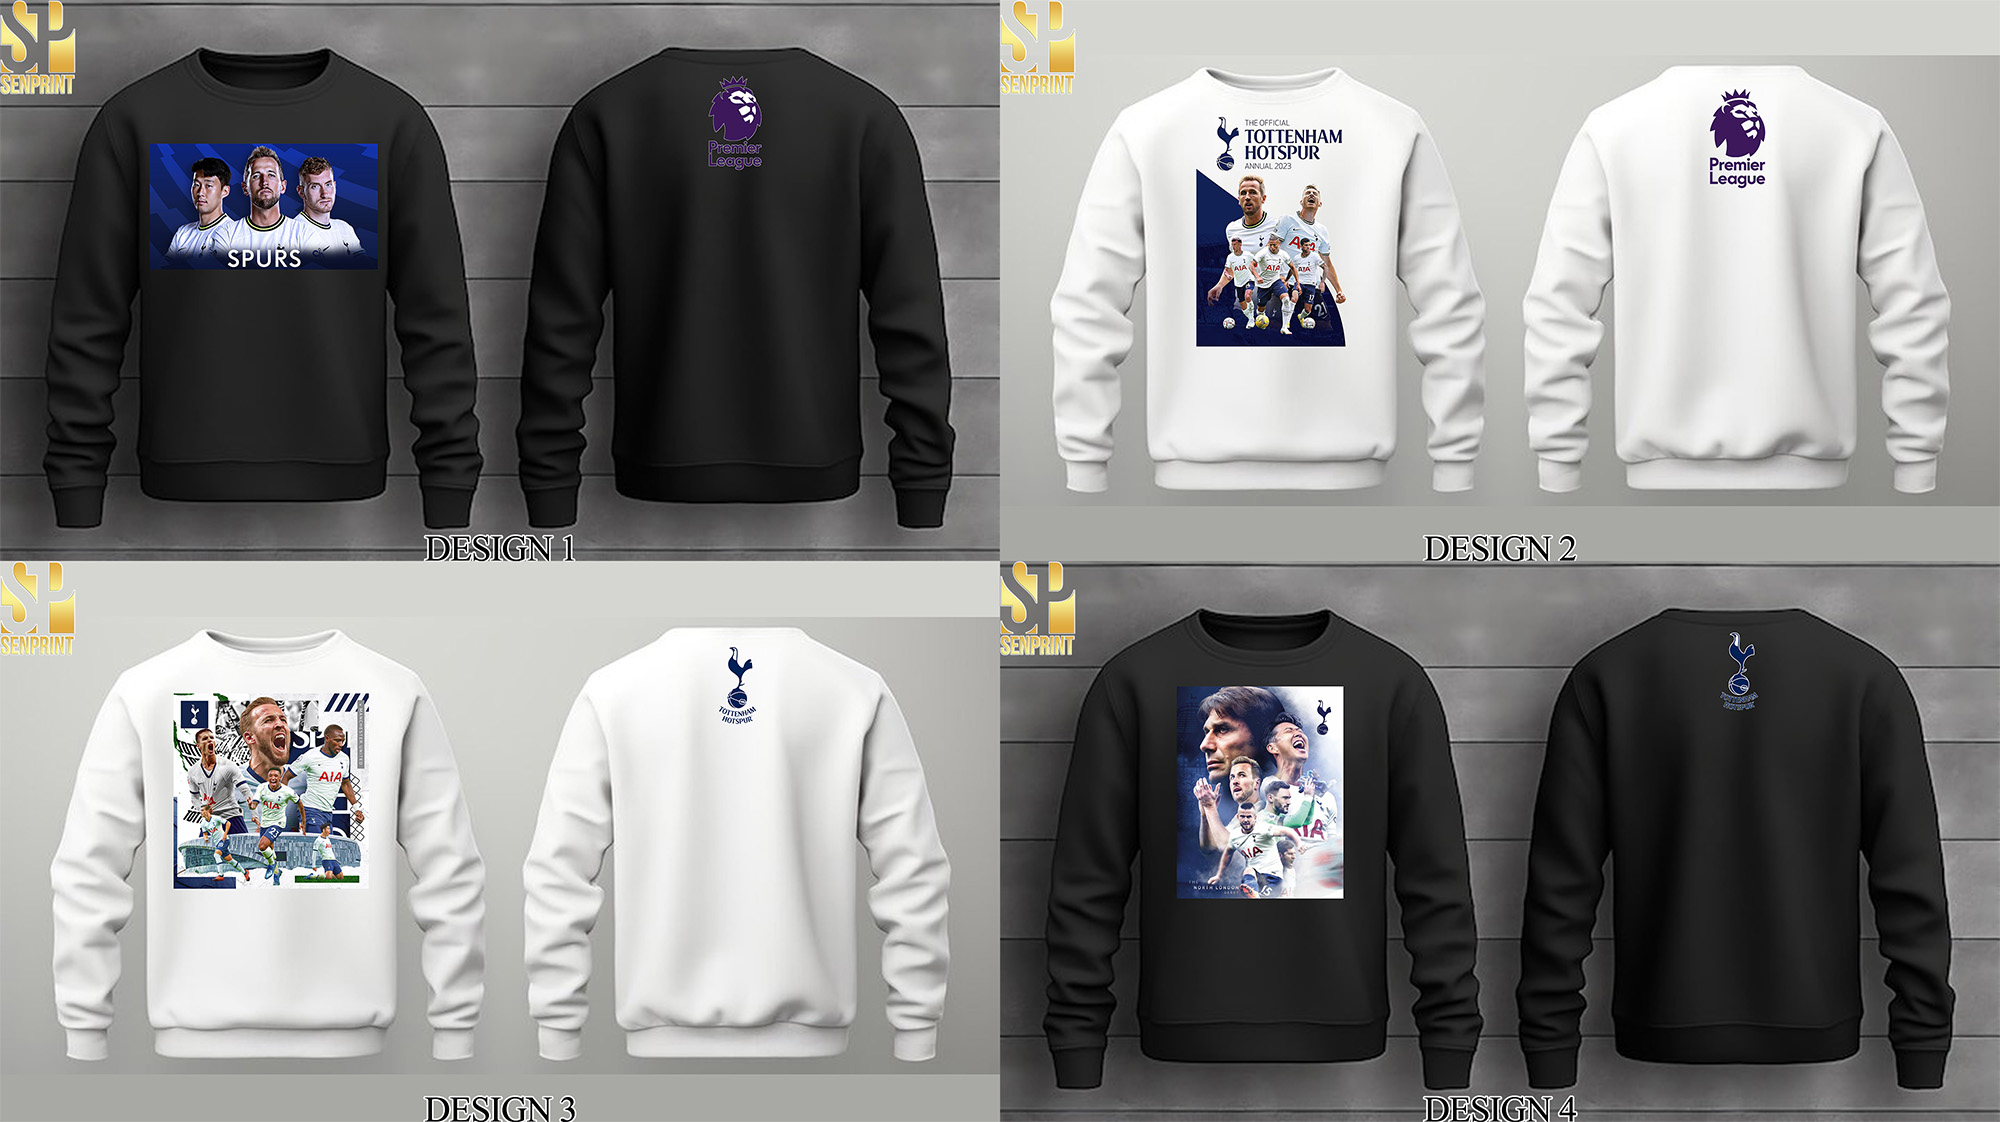 Premier League 2023 Tottenham Hotspur at Tottenham Hotspur Stadium Shirt